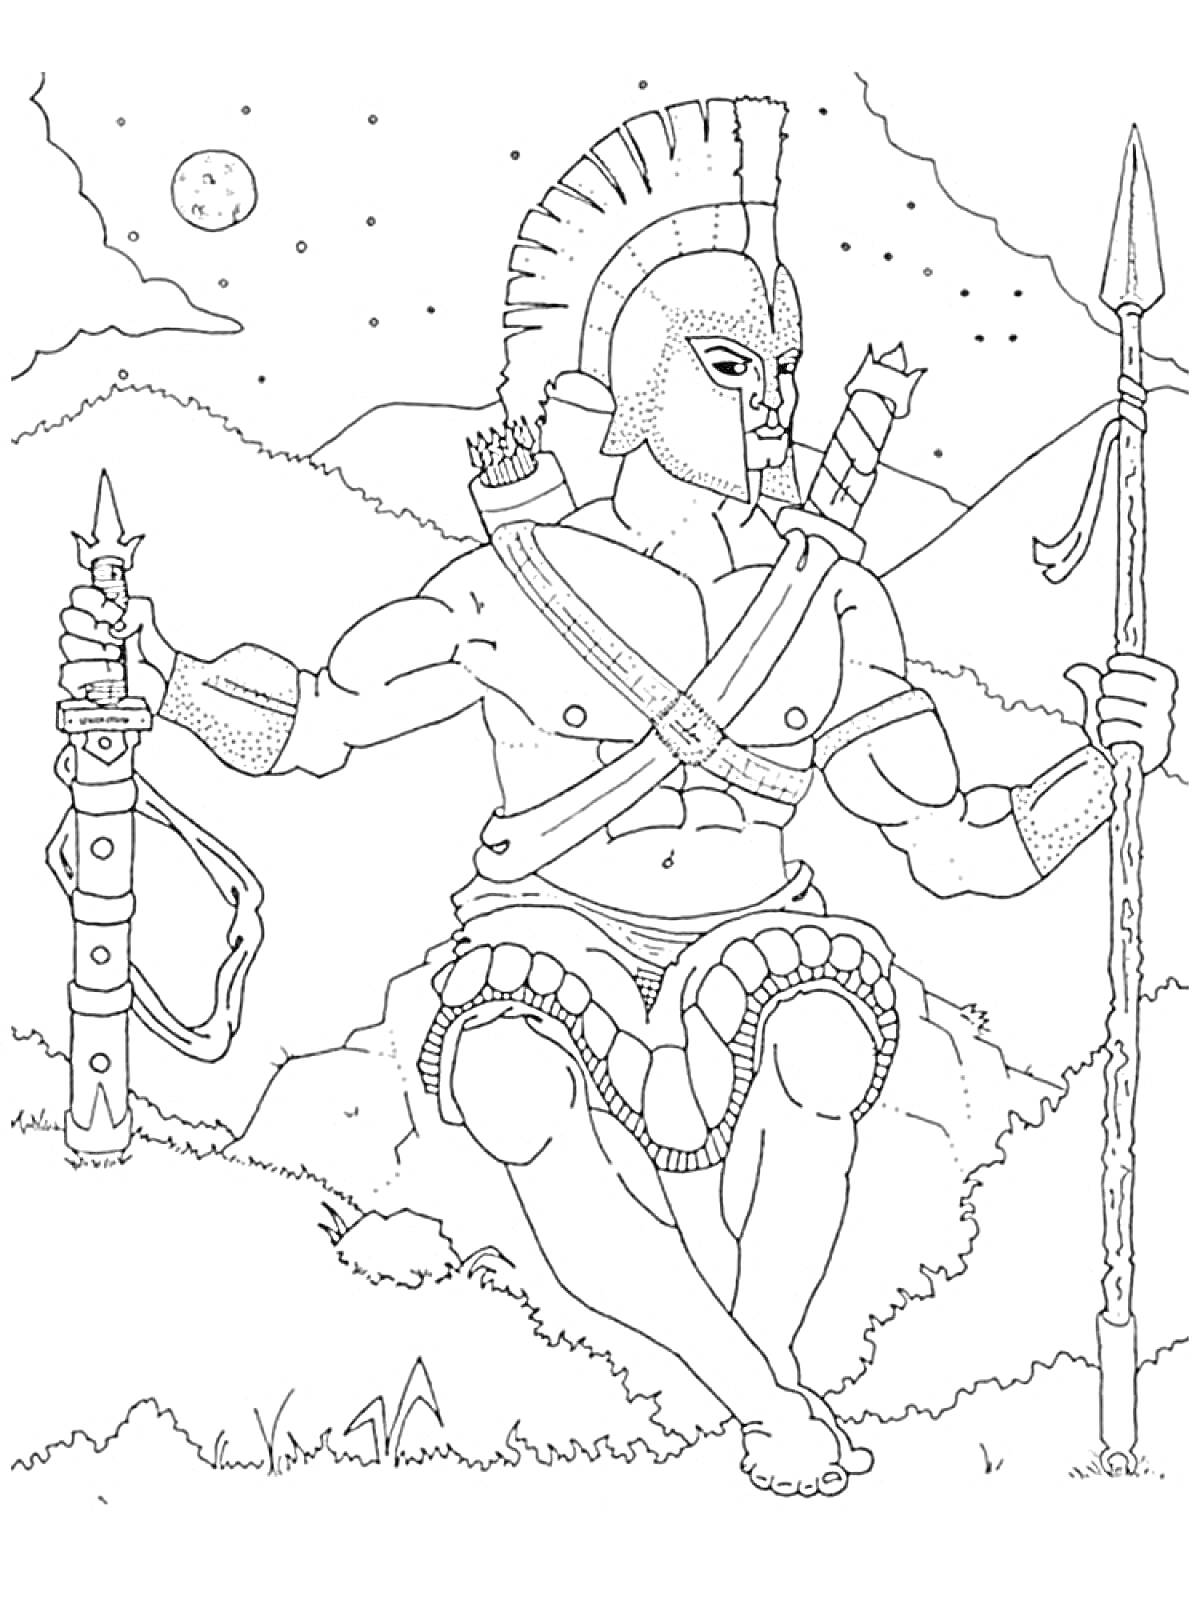 Раскраска Древнегреческий бог войны в шлеме со щитом и копьем, сидящий на камне на фоне звездного ночного неба и гор